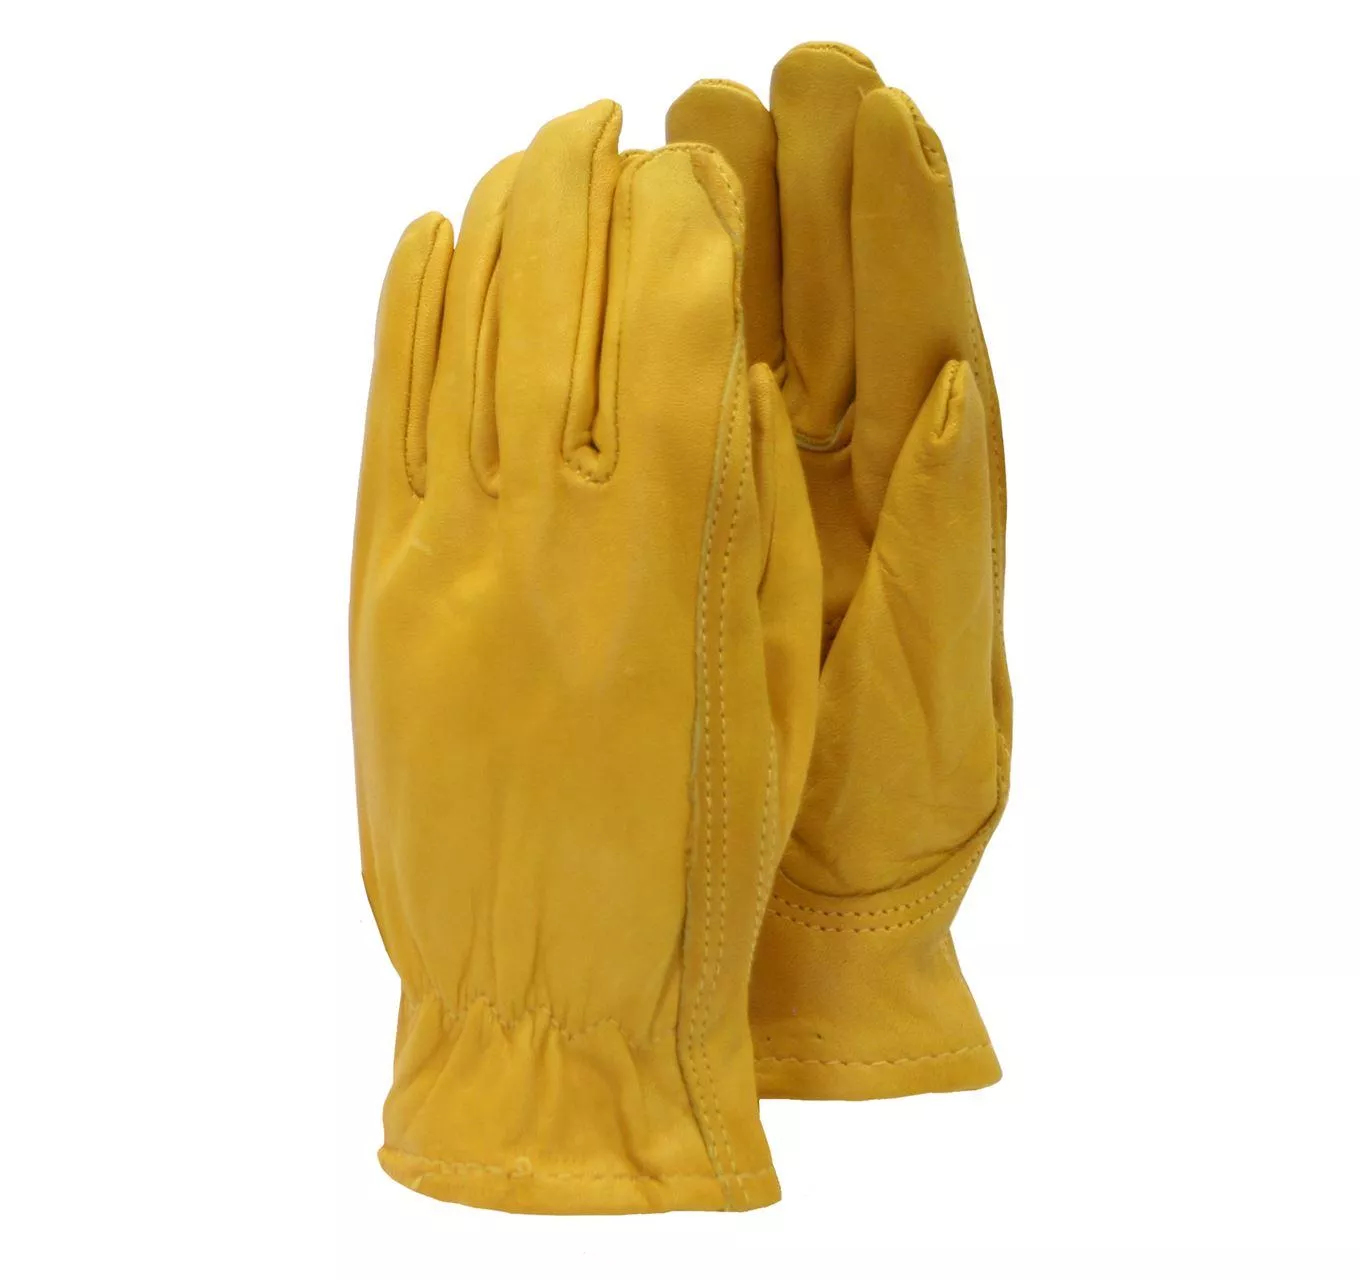 Ladies Premium Leather Glove M